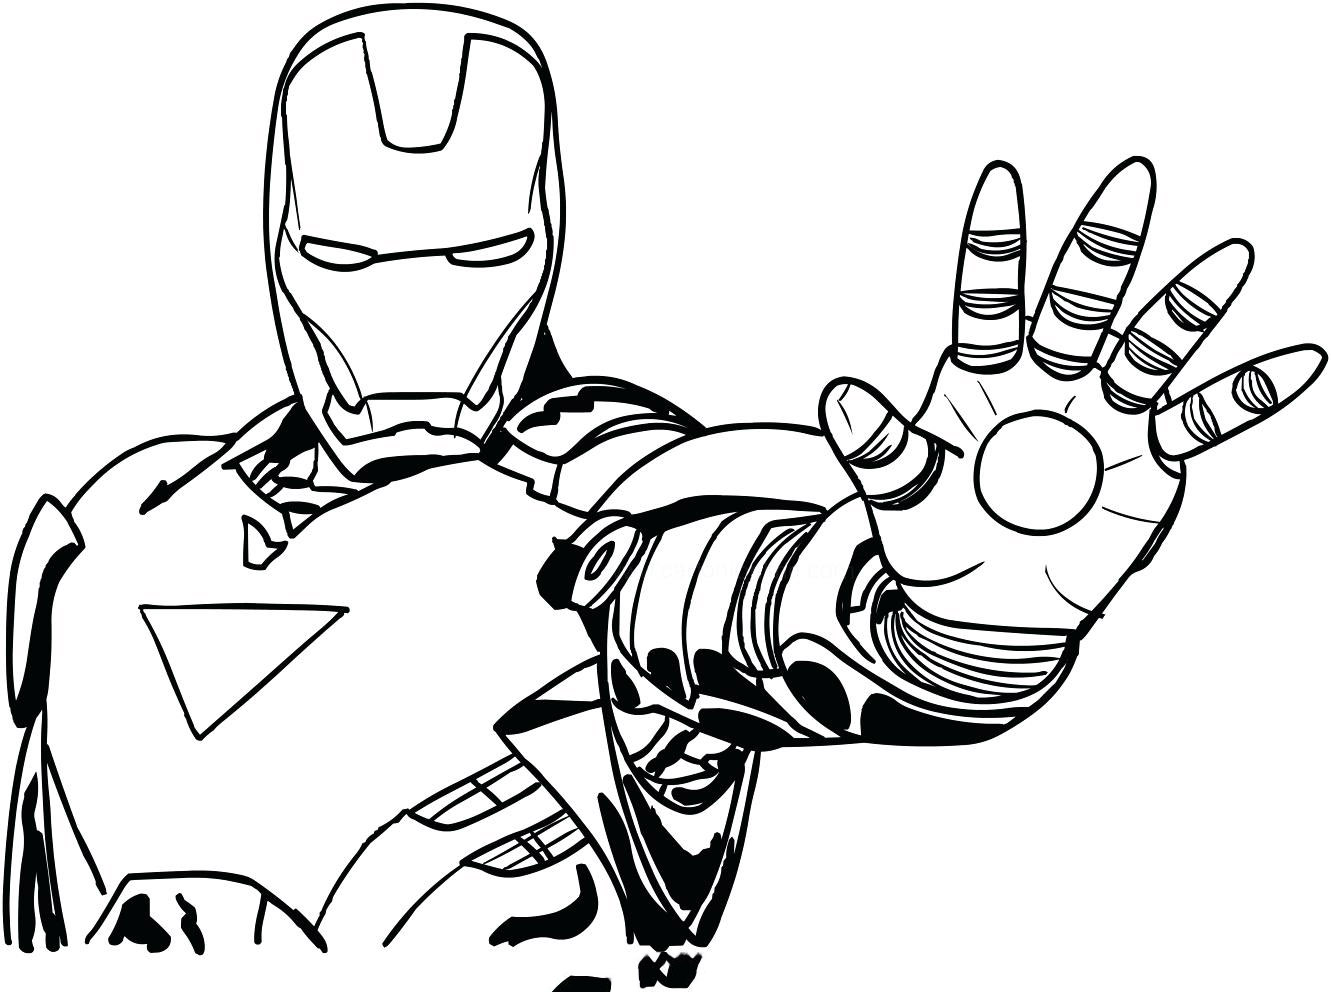 Tuyển tập các bức tranh tô màu Iron Man đẹp nhất dành cho bé  TRẦN HƯNG ĐẠO